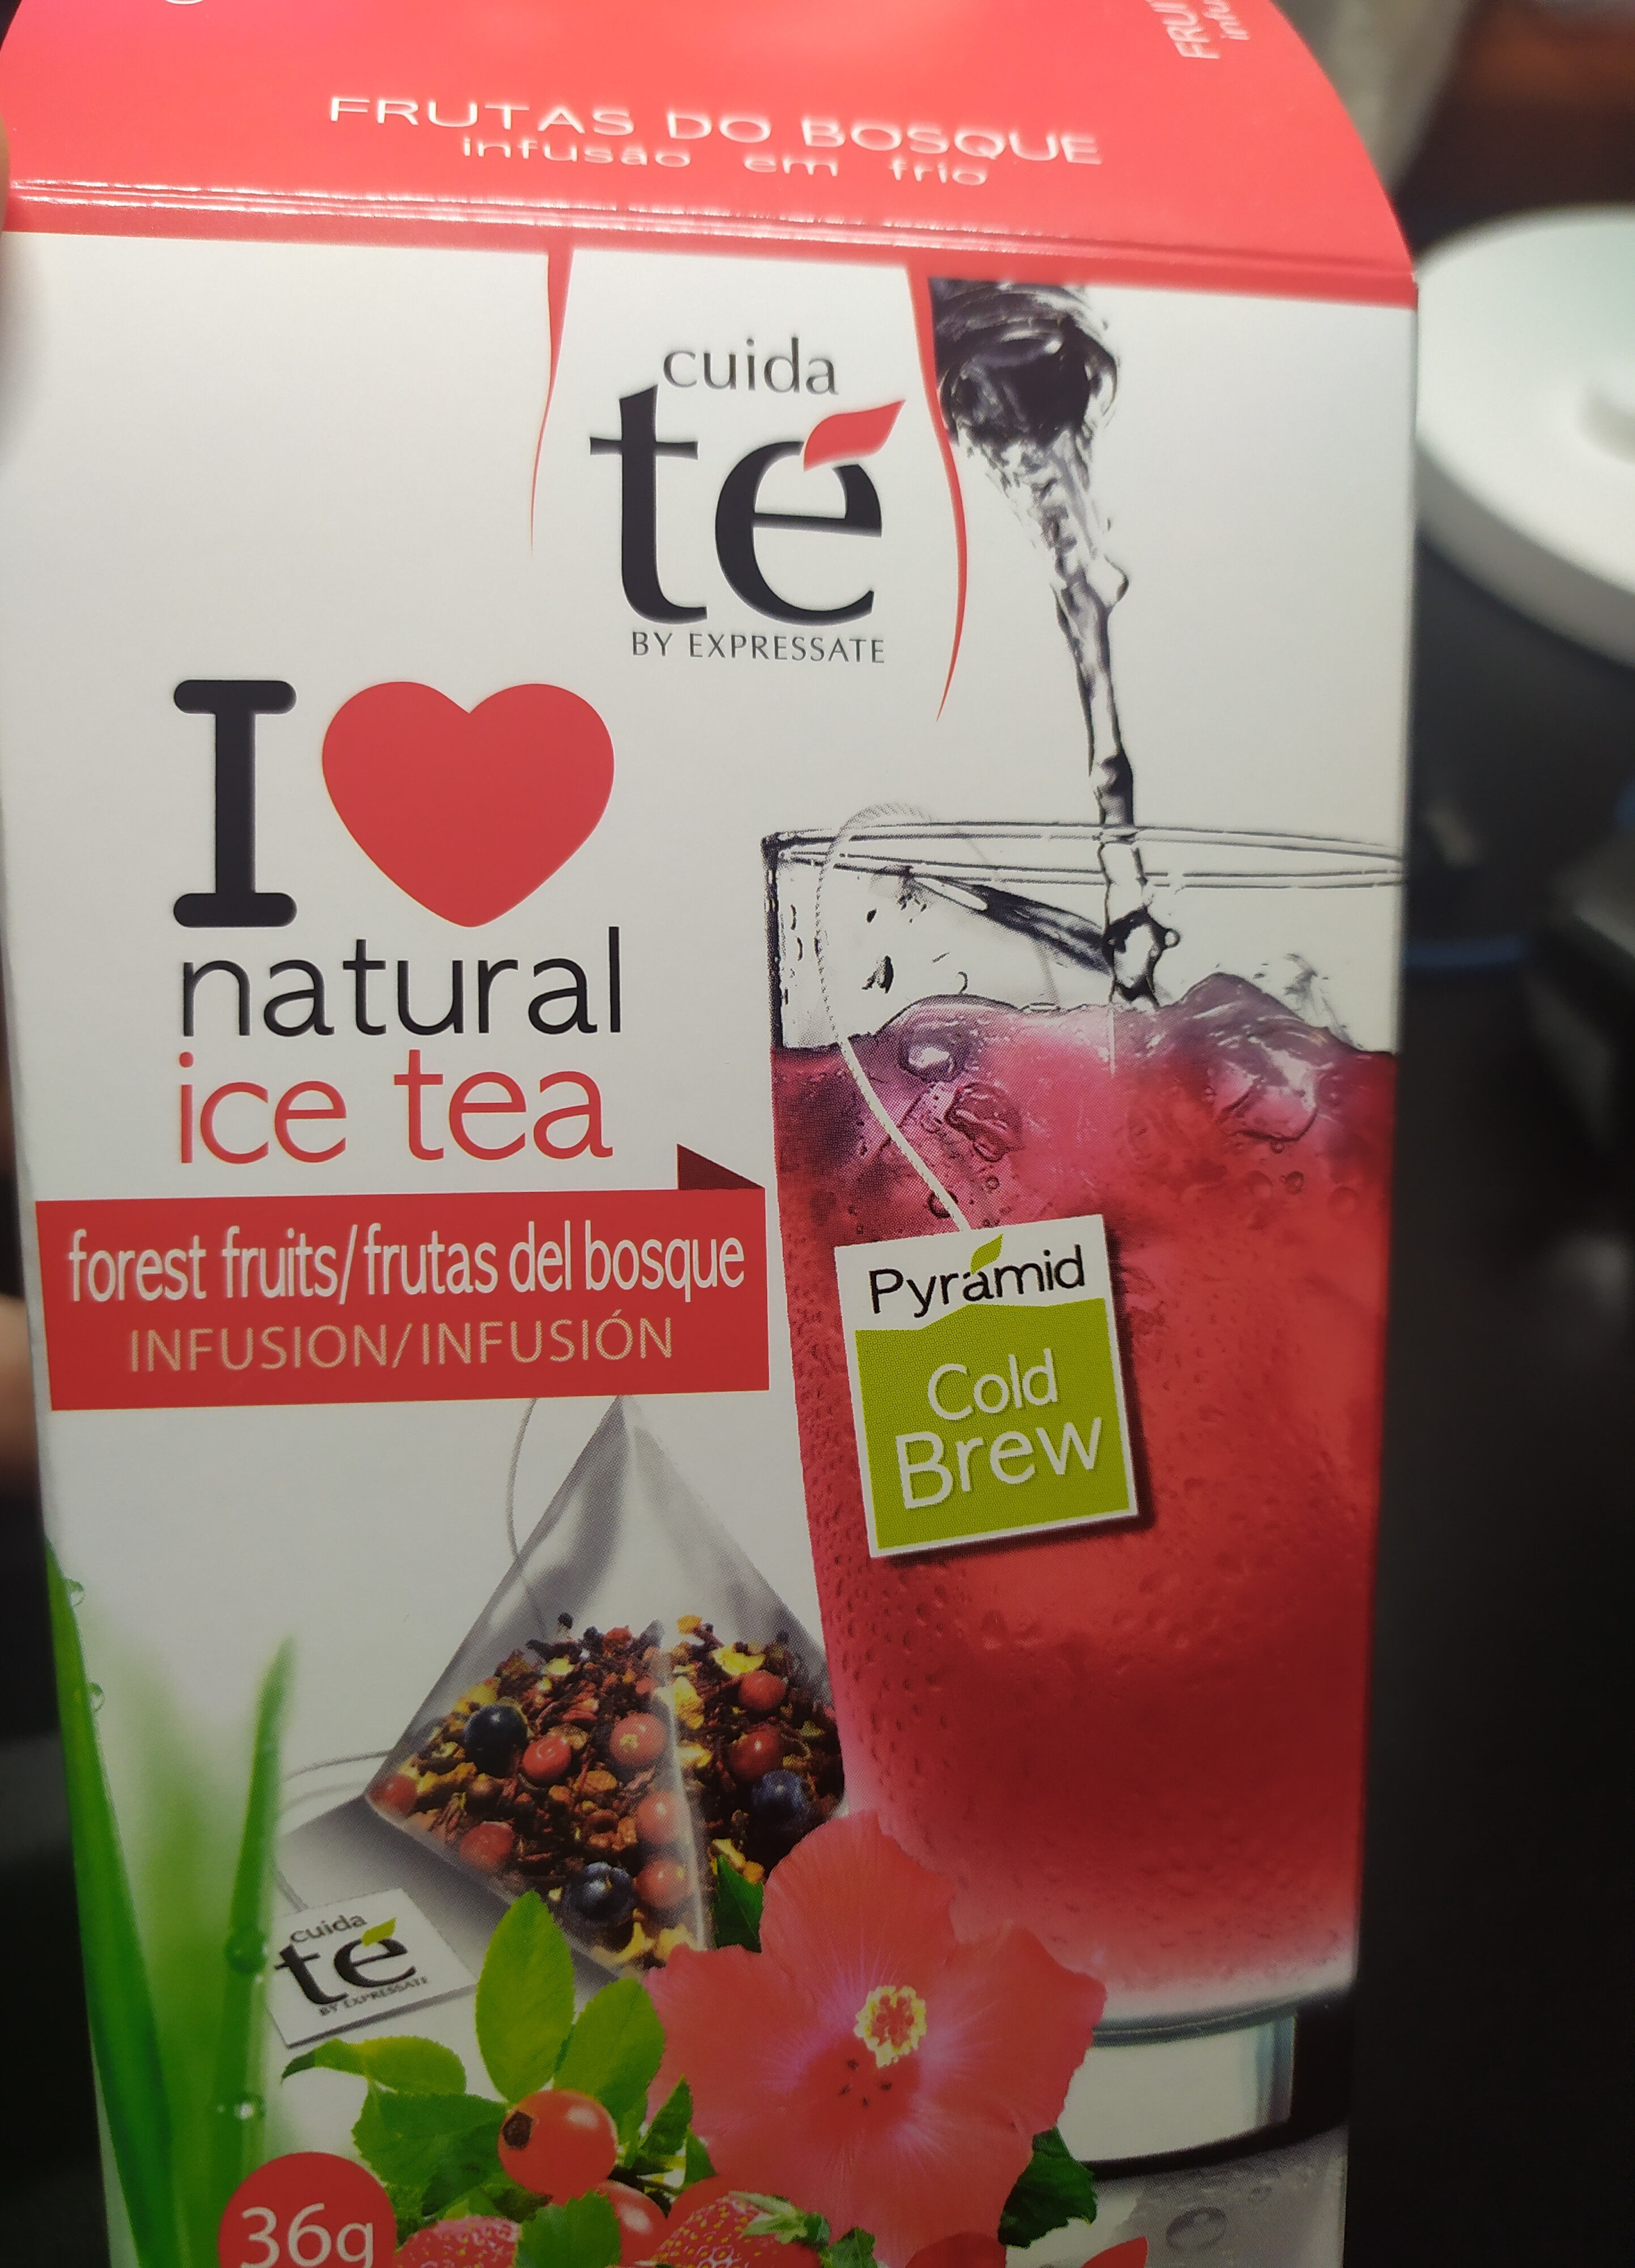 Ice tea frutas del bosque - Prodotto - es